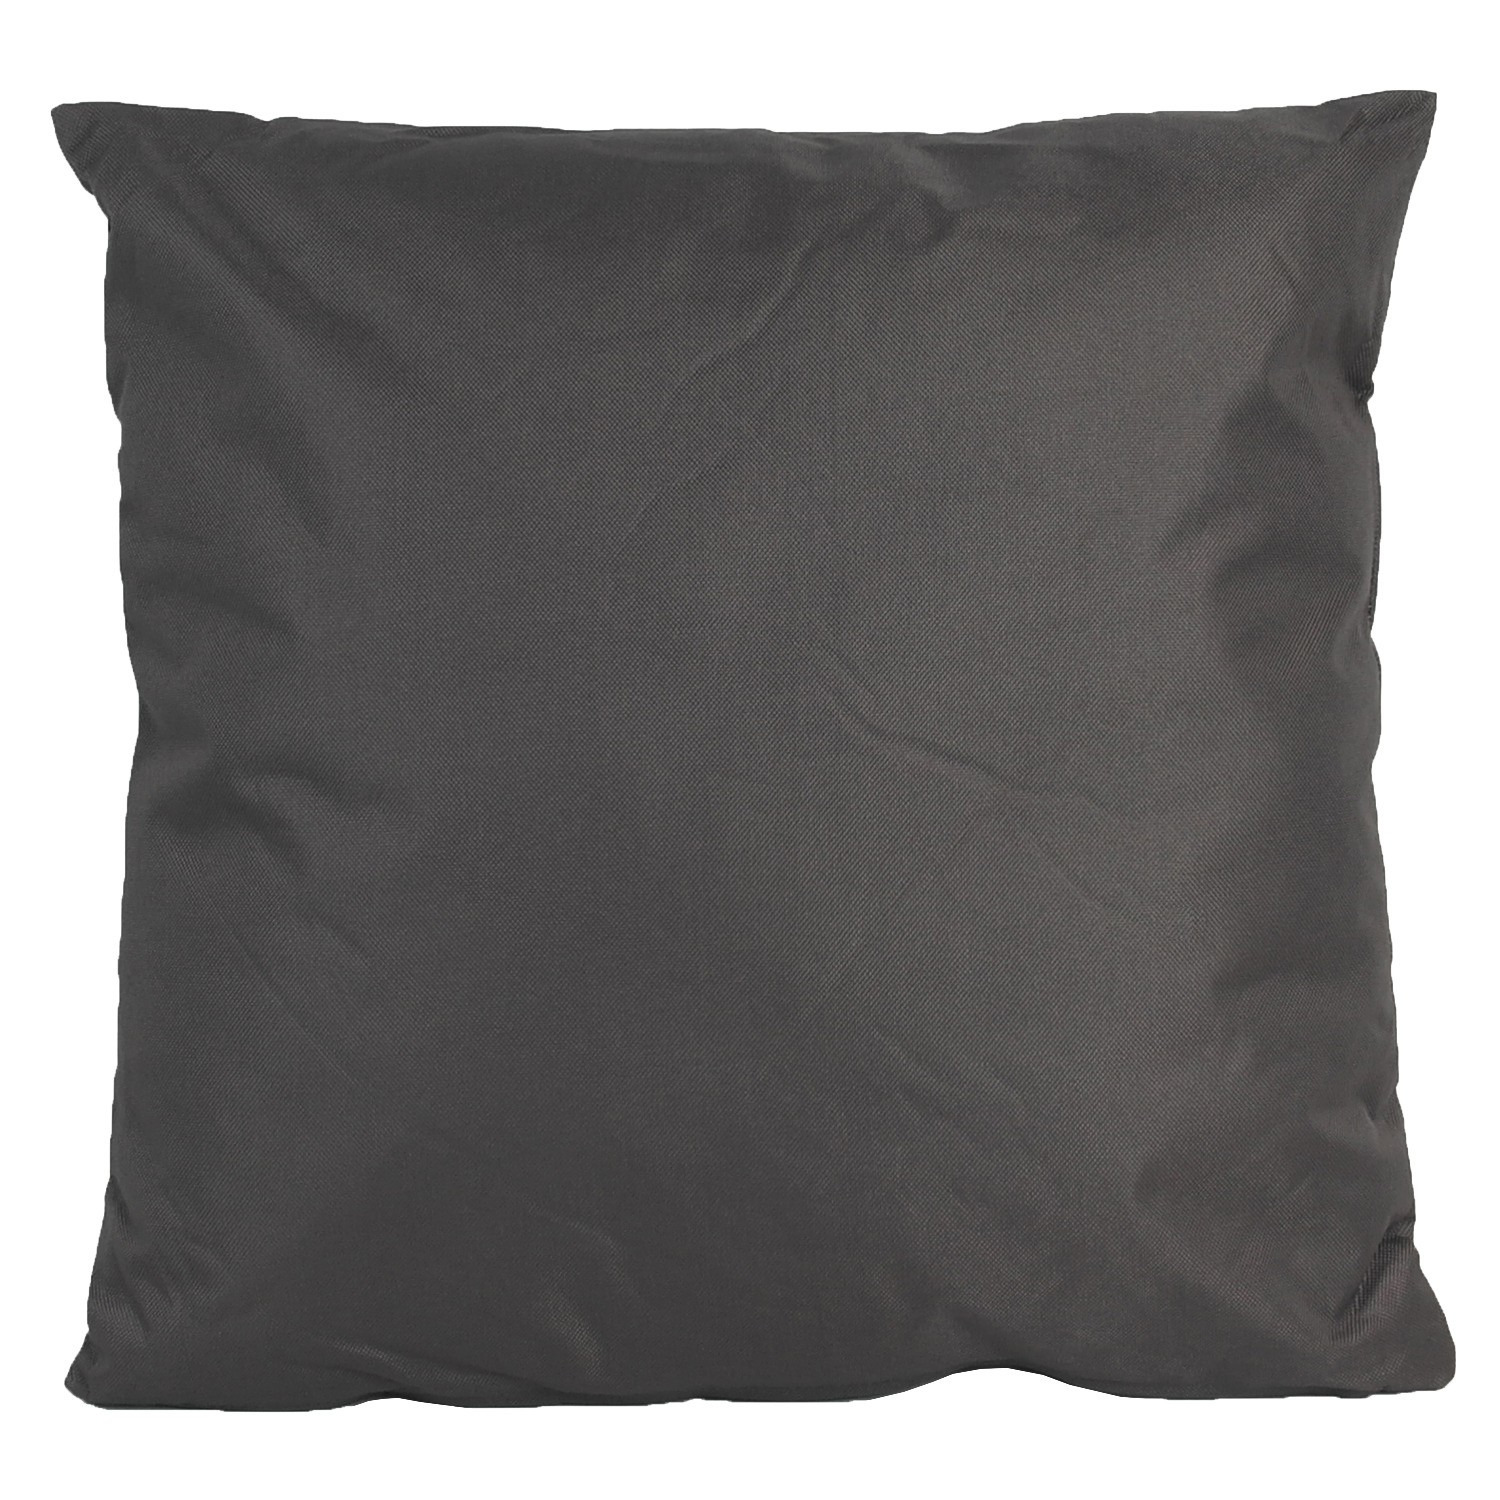 1x Bank/Sier kussens voor binnen en buiten in de kleur antraciet grijs 45 x 45 cm